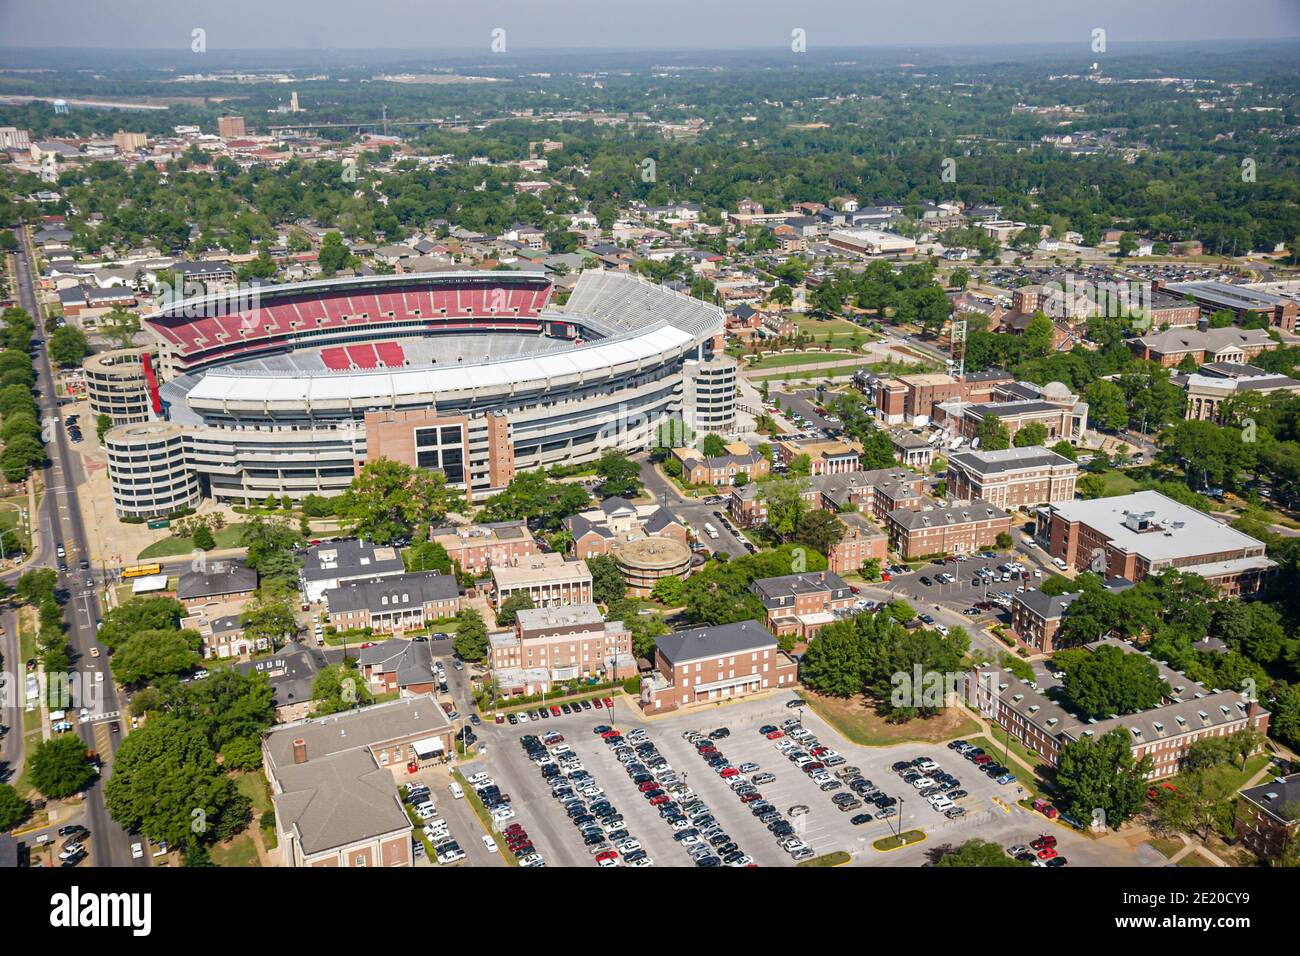 Tuscaloosa Alabama, Universidad de Alabama, campus del estadio de fútbol Bryant Denny, vista aérea, Foto de stock